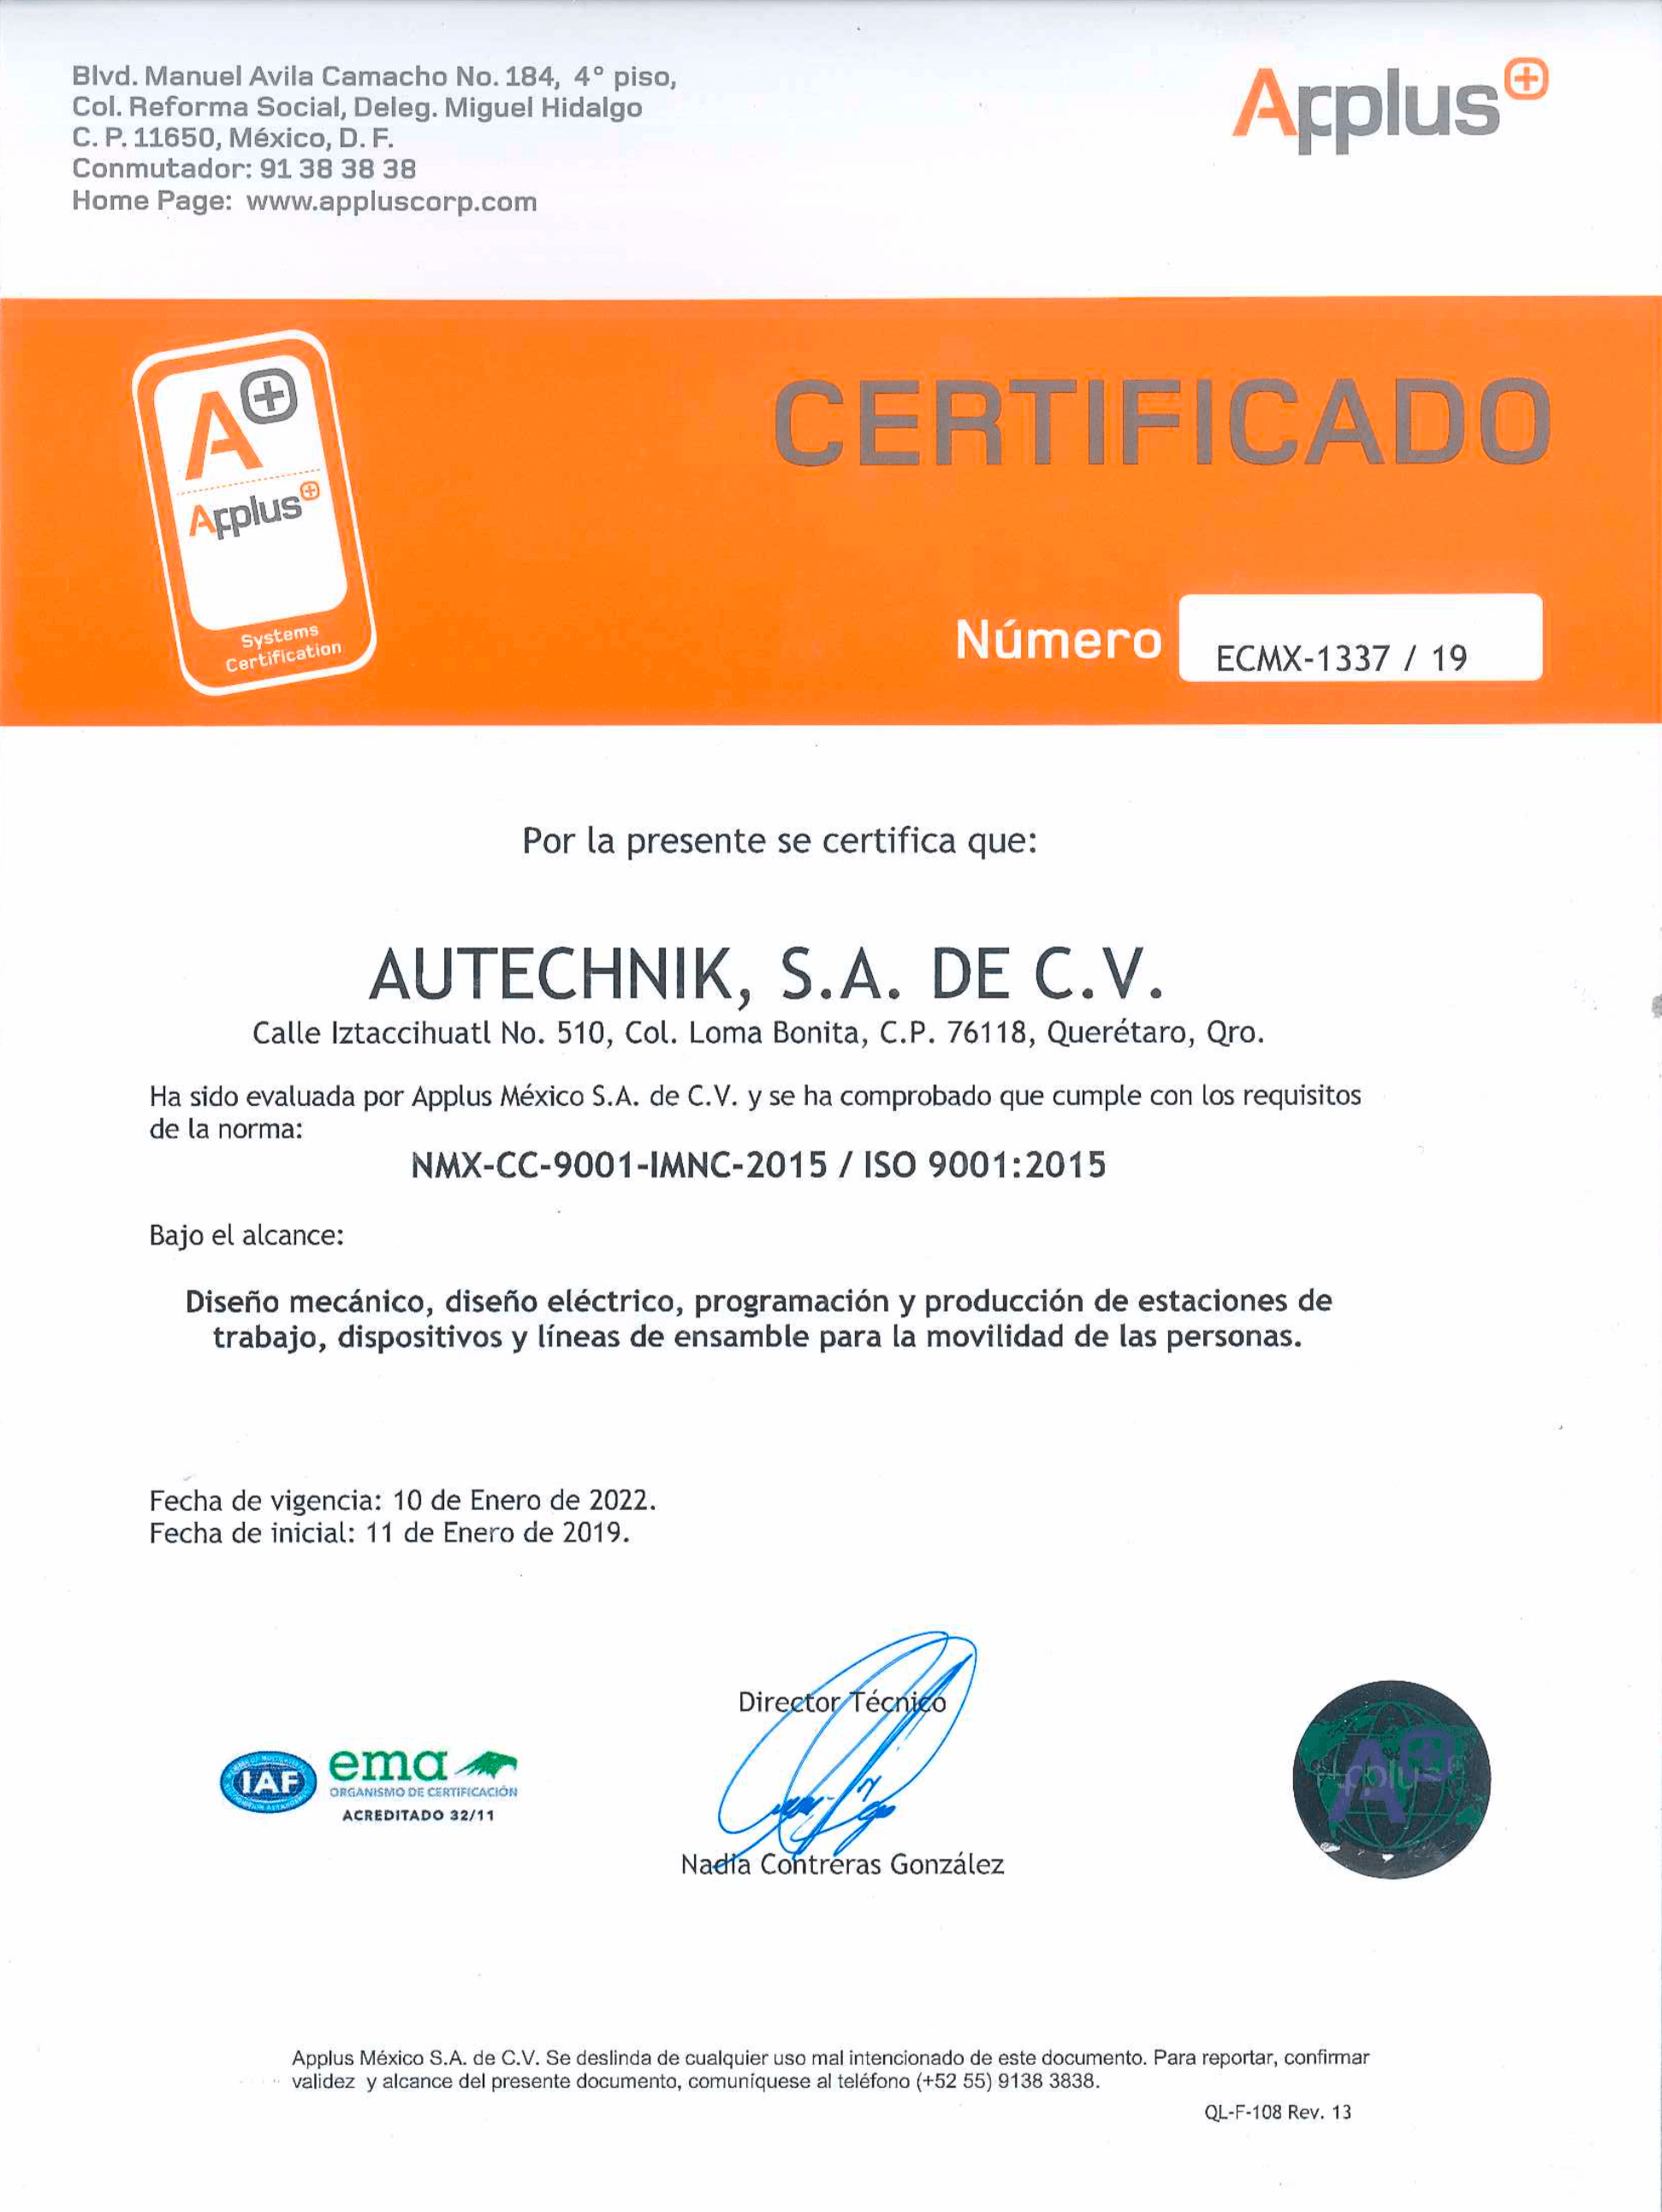 Cetificado ISO 9001:2015 Autechnik